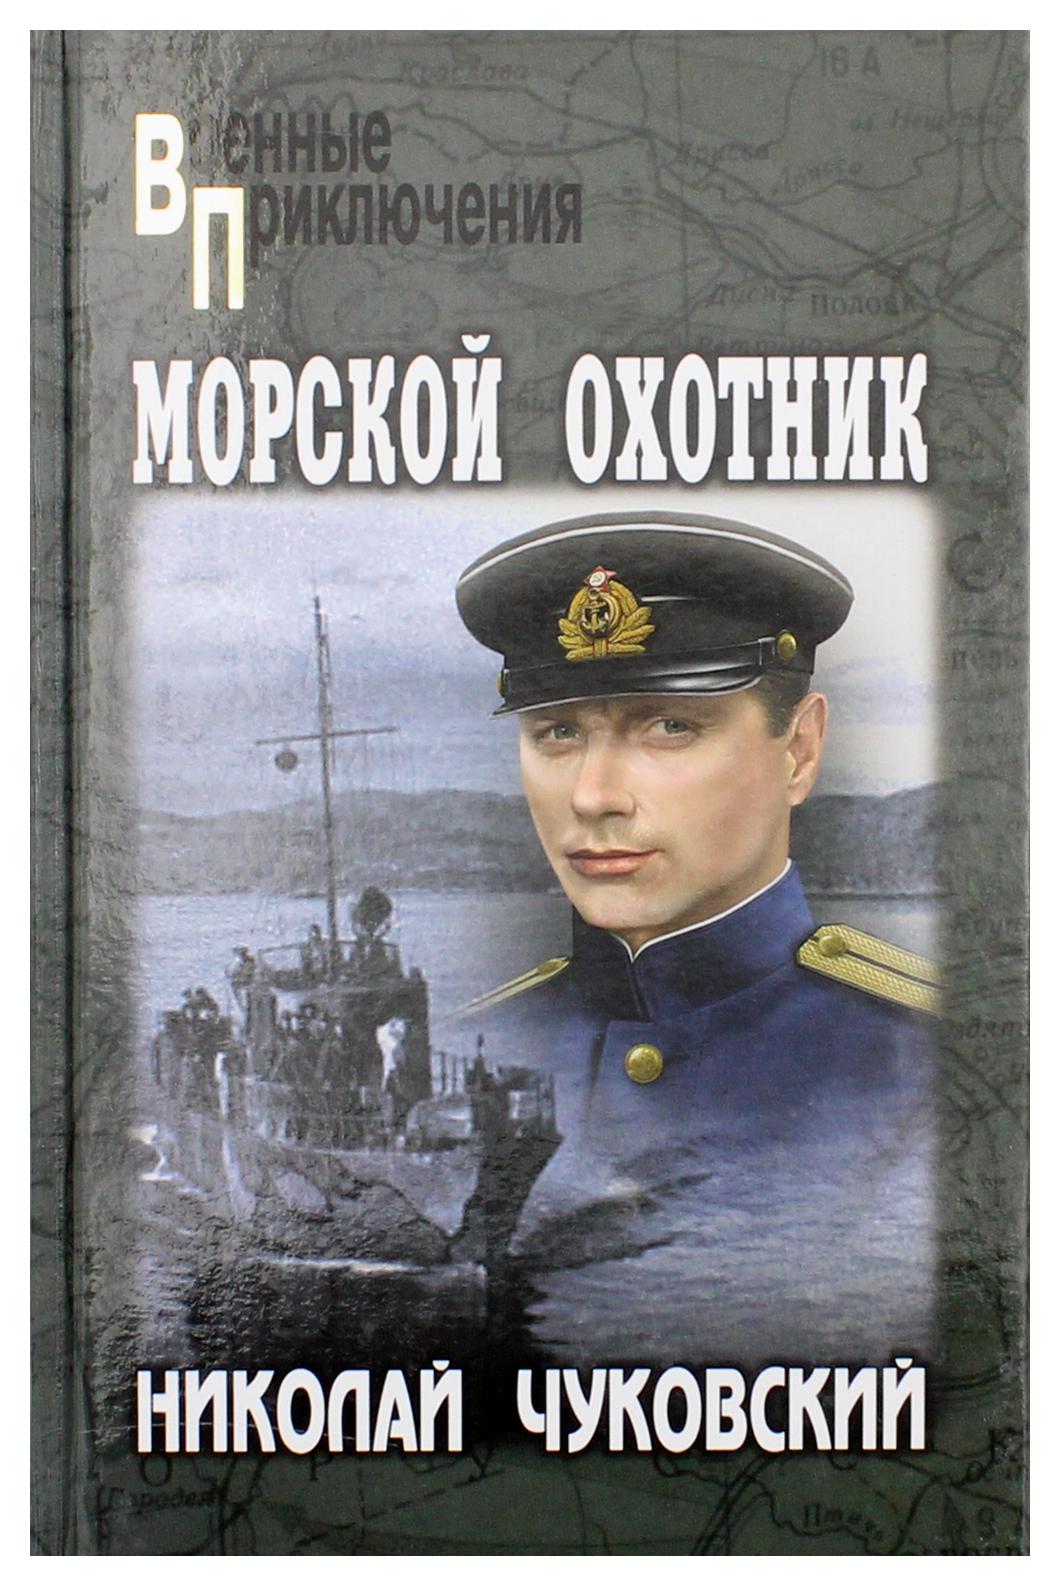 Военно морская книги. Чуковский н. к. морской охотни.